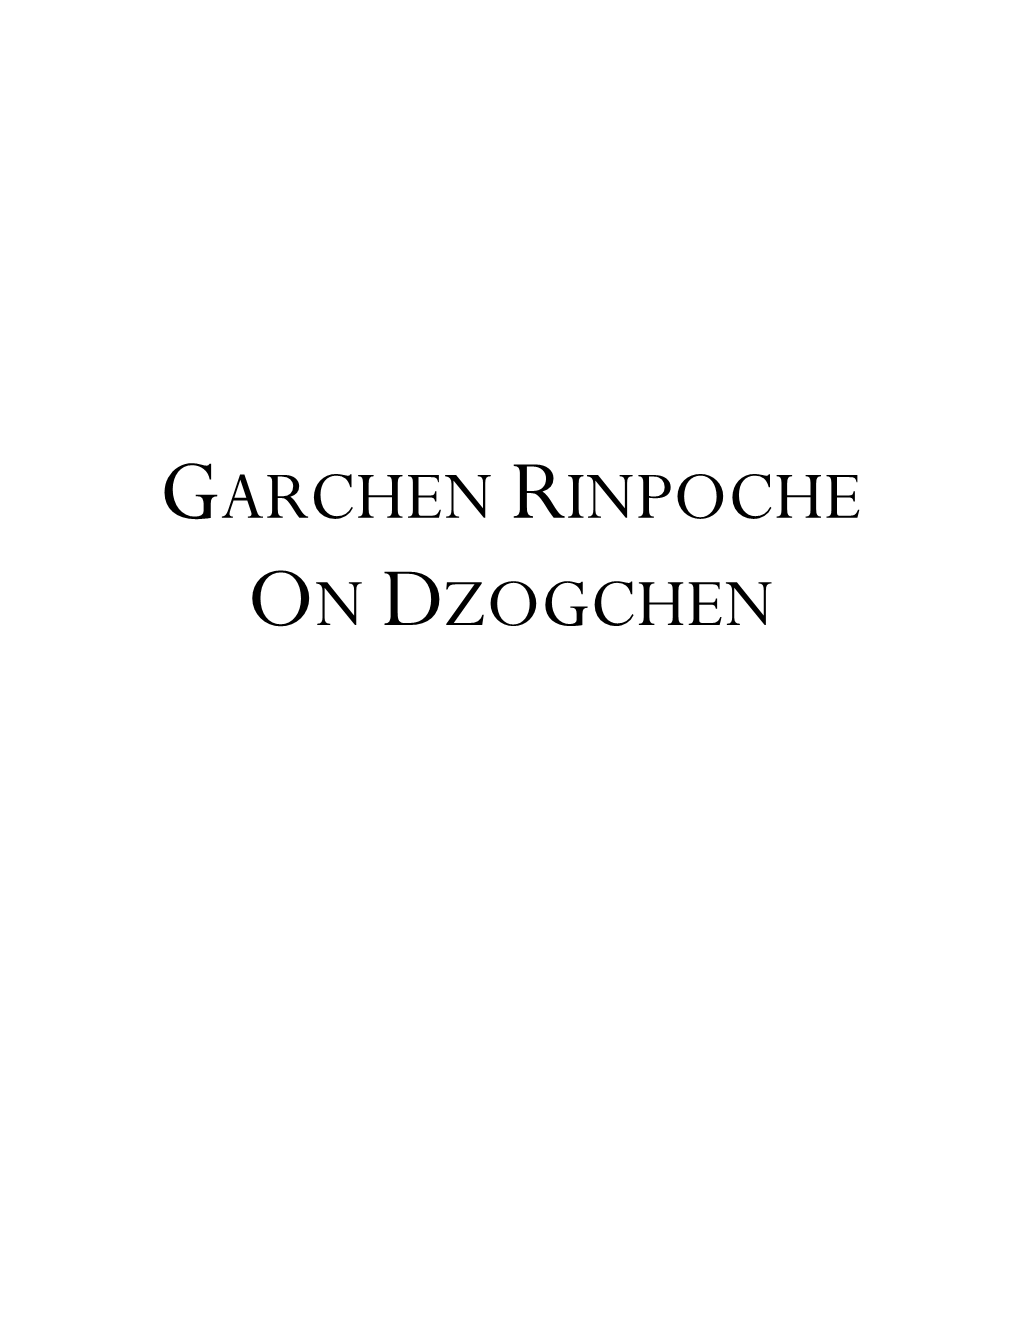 Garchen Rinpoche on Dzogchen